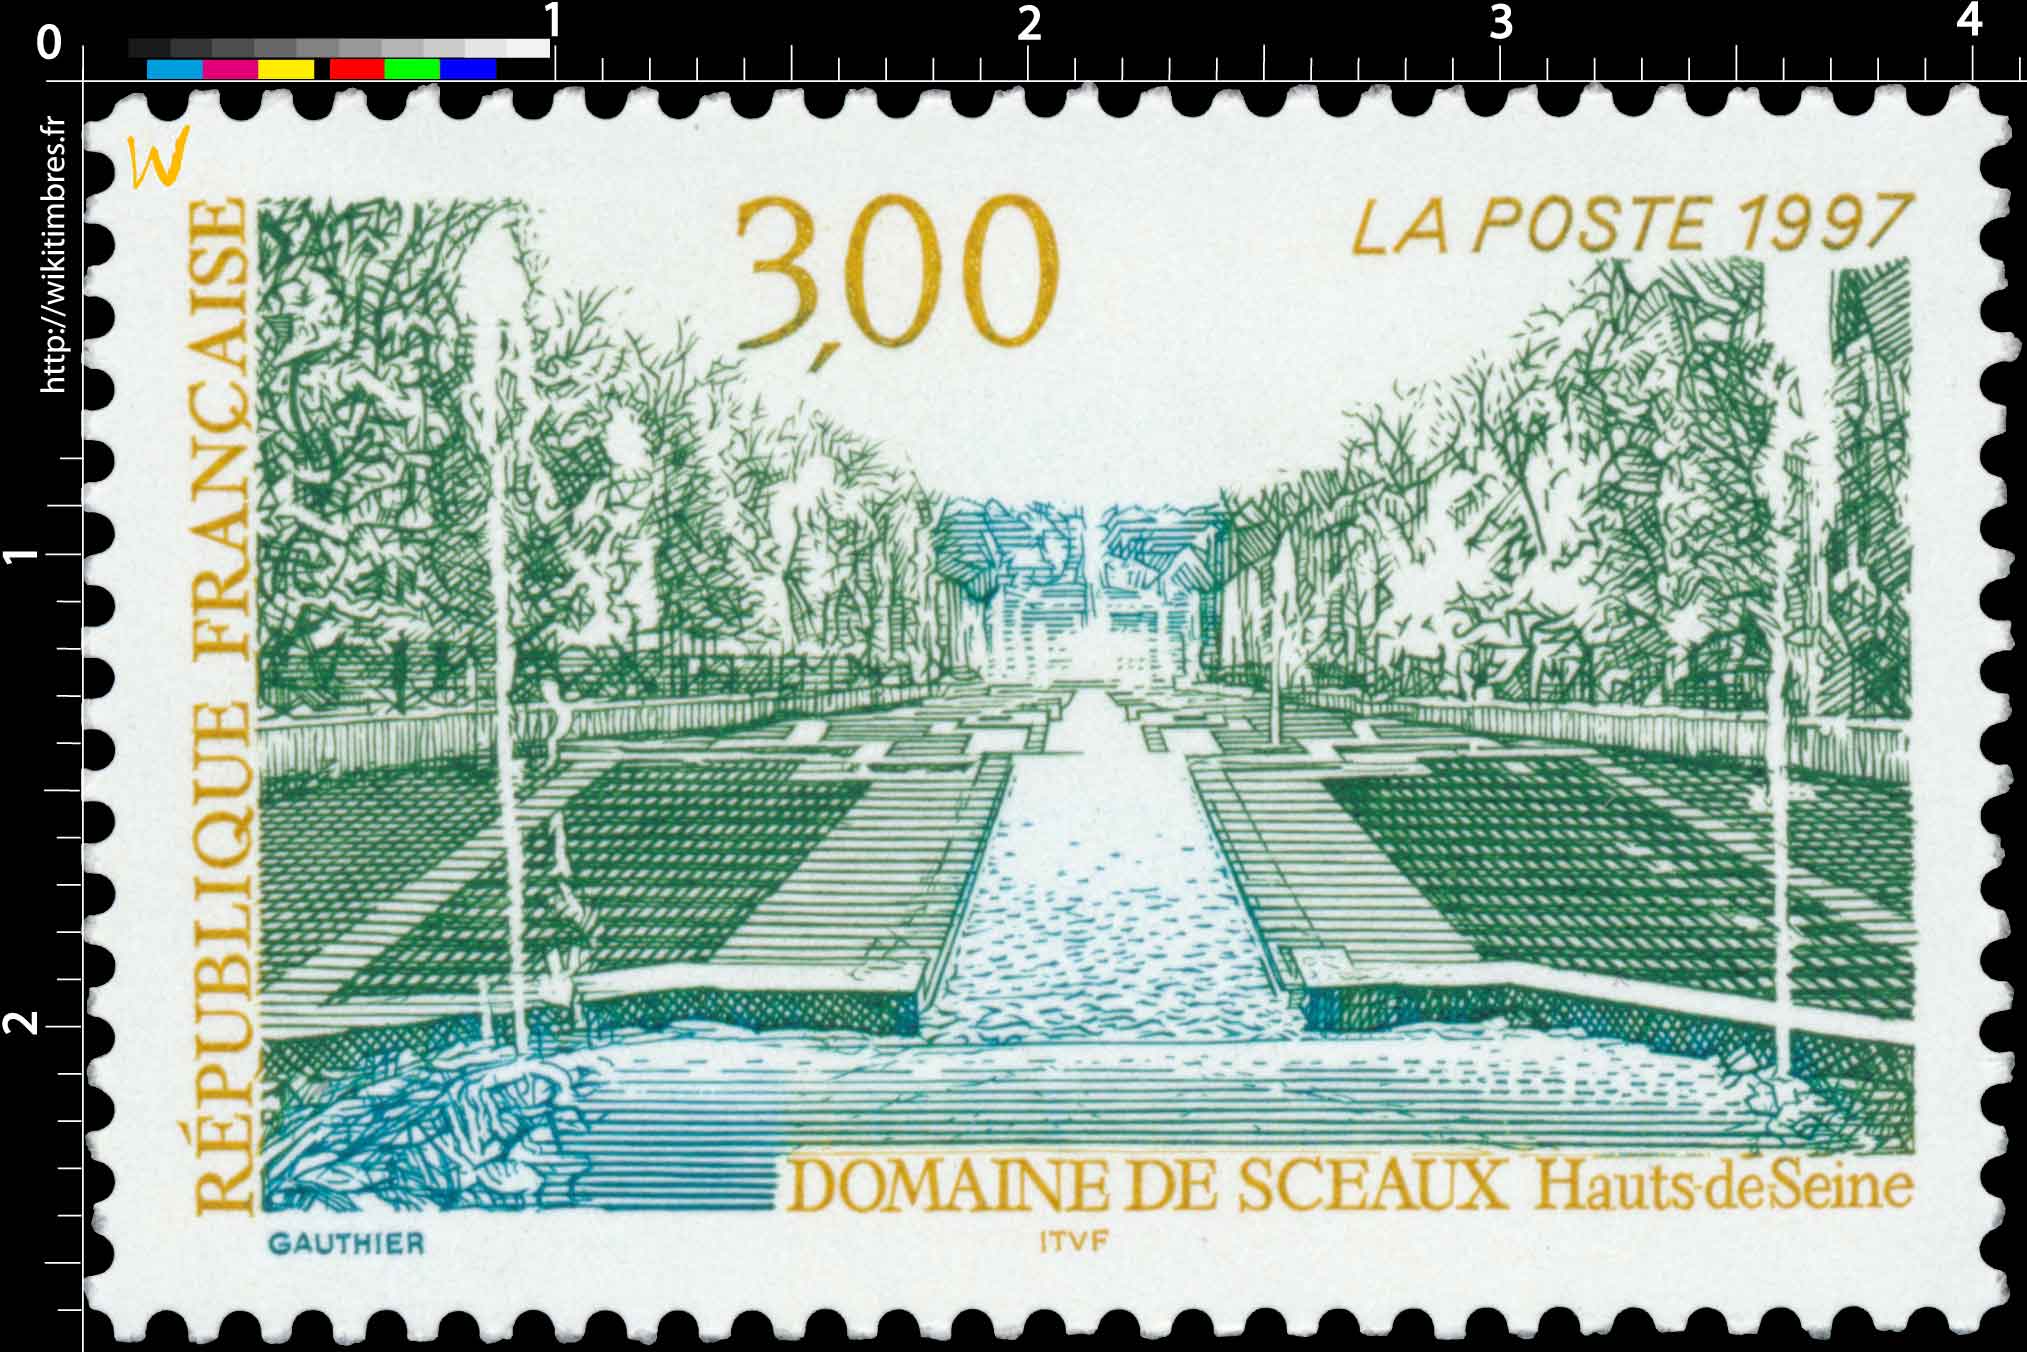 1997 DOMAINE DE SCEAUX Hauts de Seine